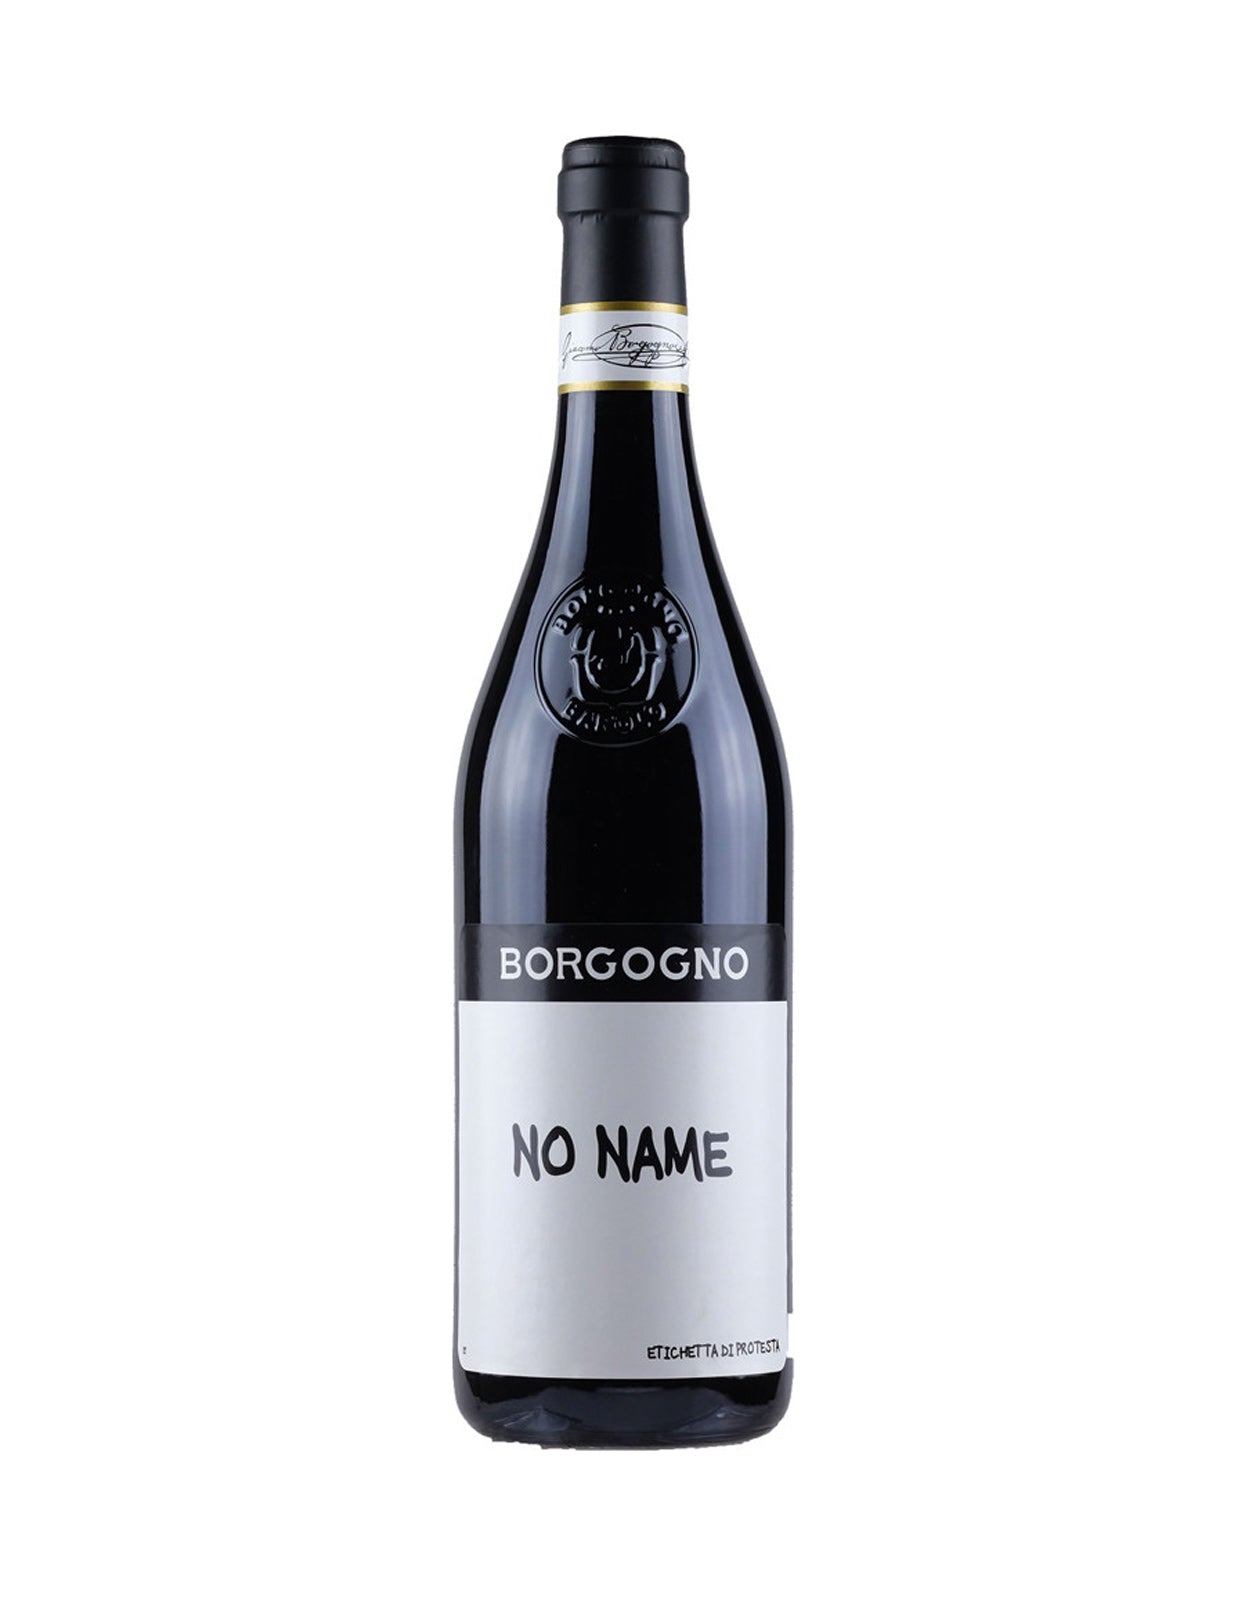 Borgogno 'No Name' 2020